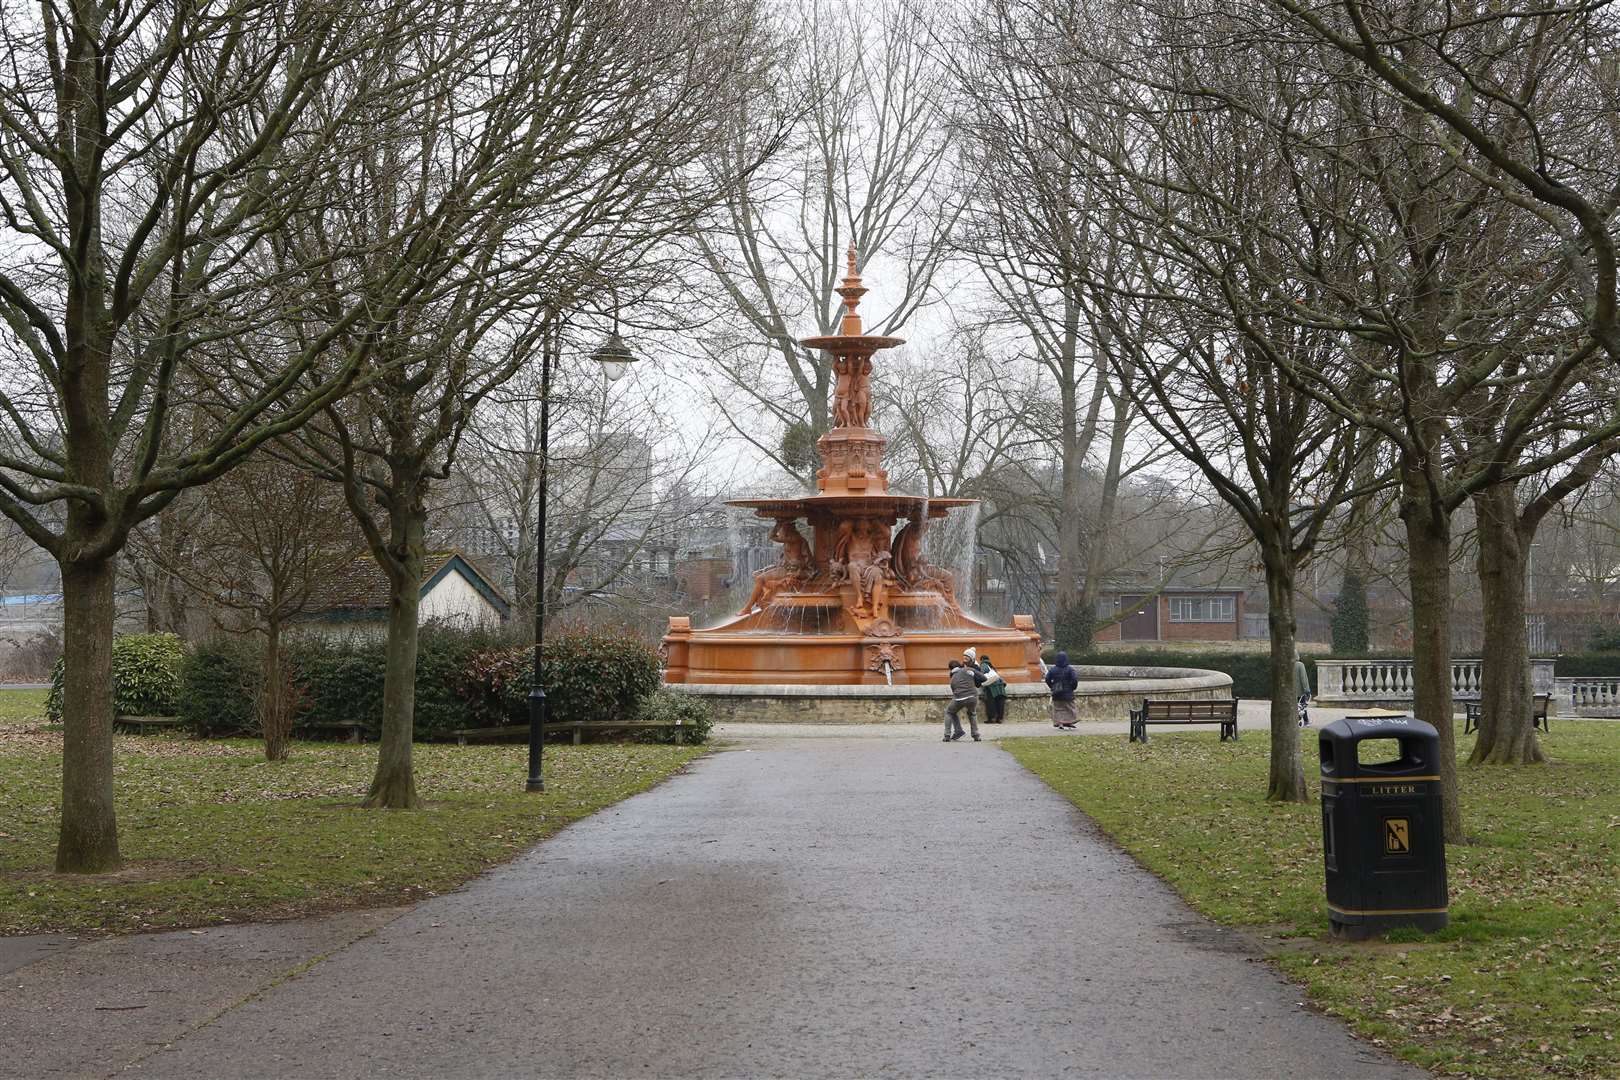 The fountain in Victoria Park